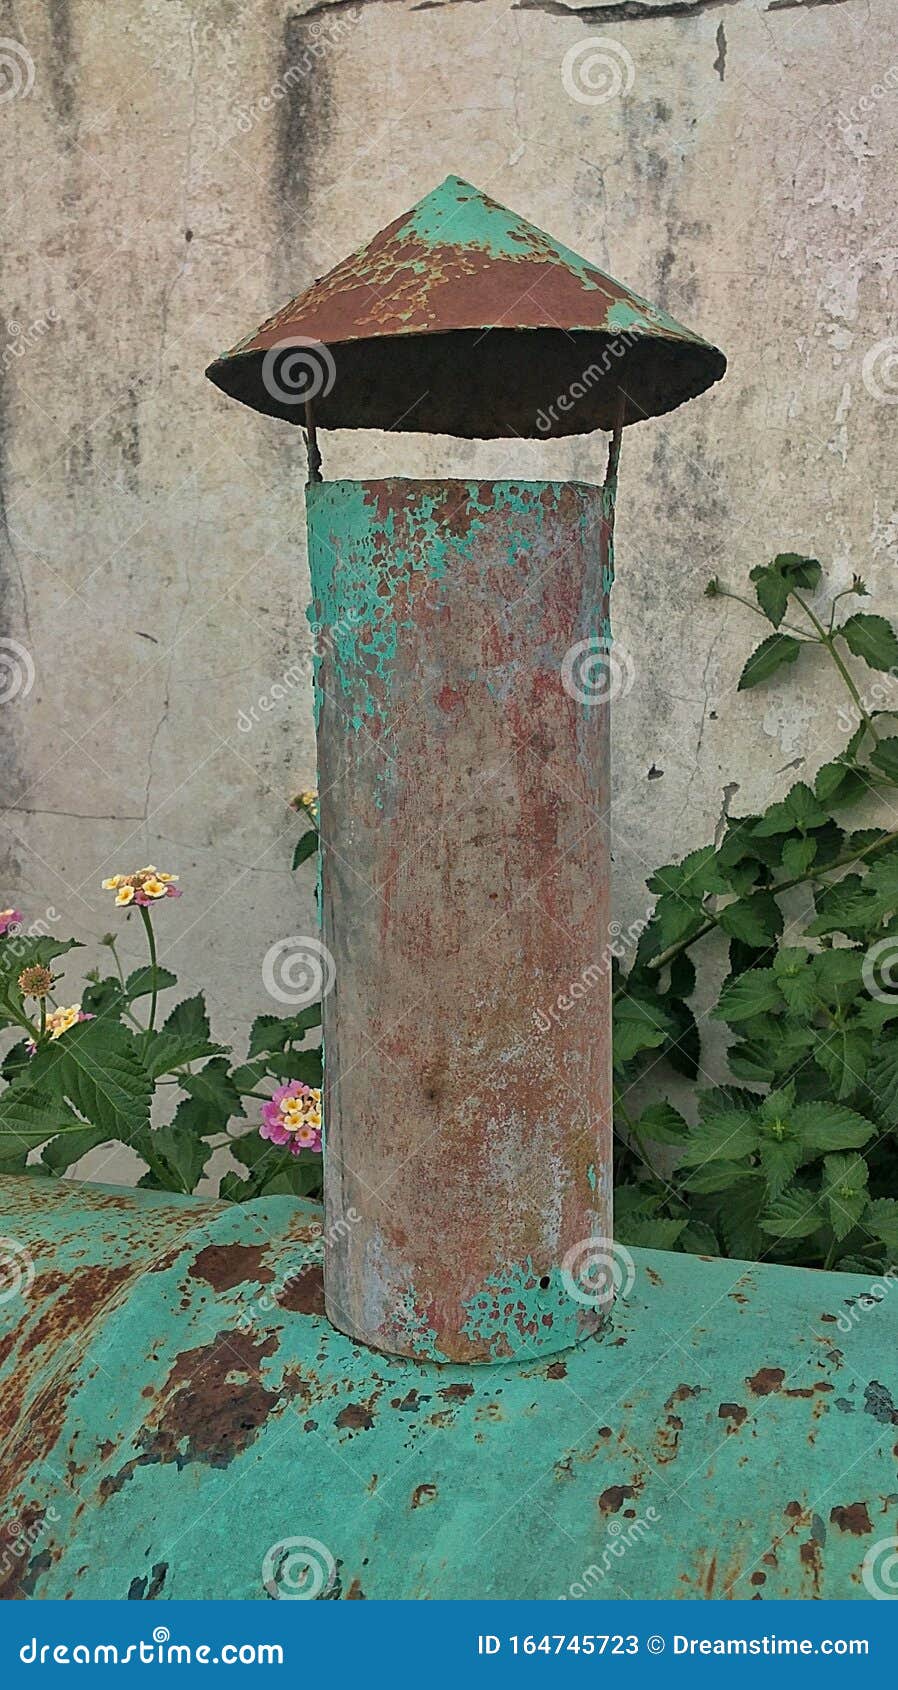 rusty chimney - chimenea oxidada